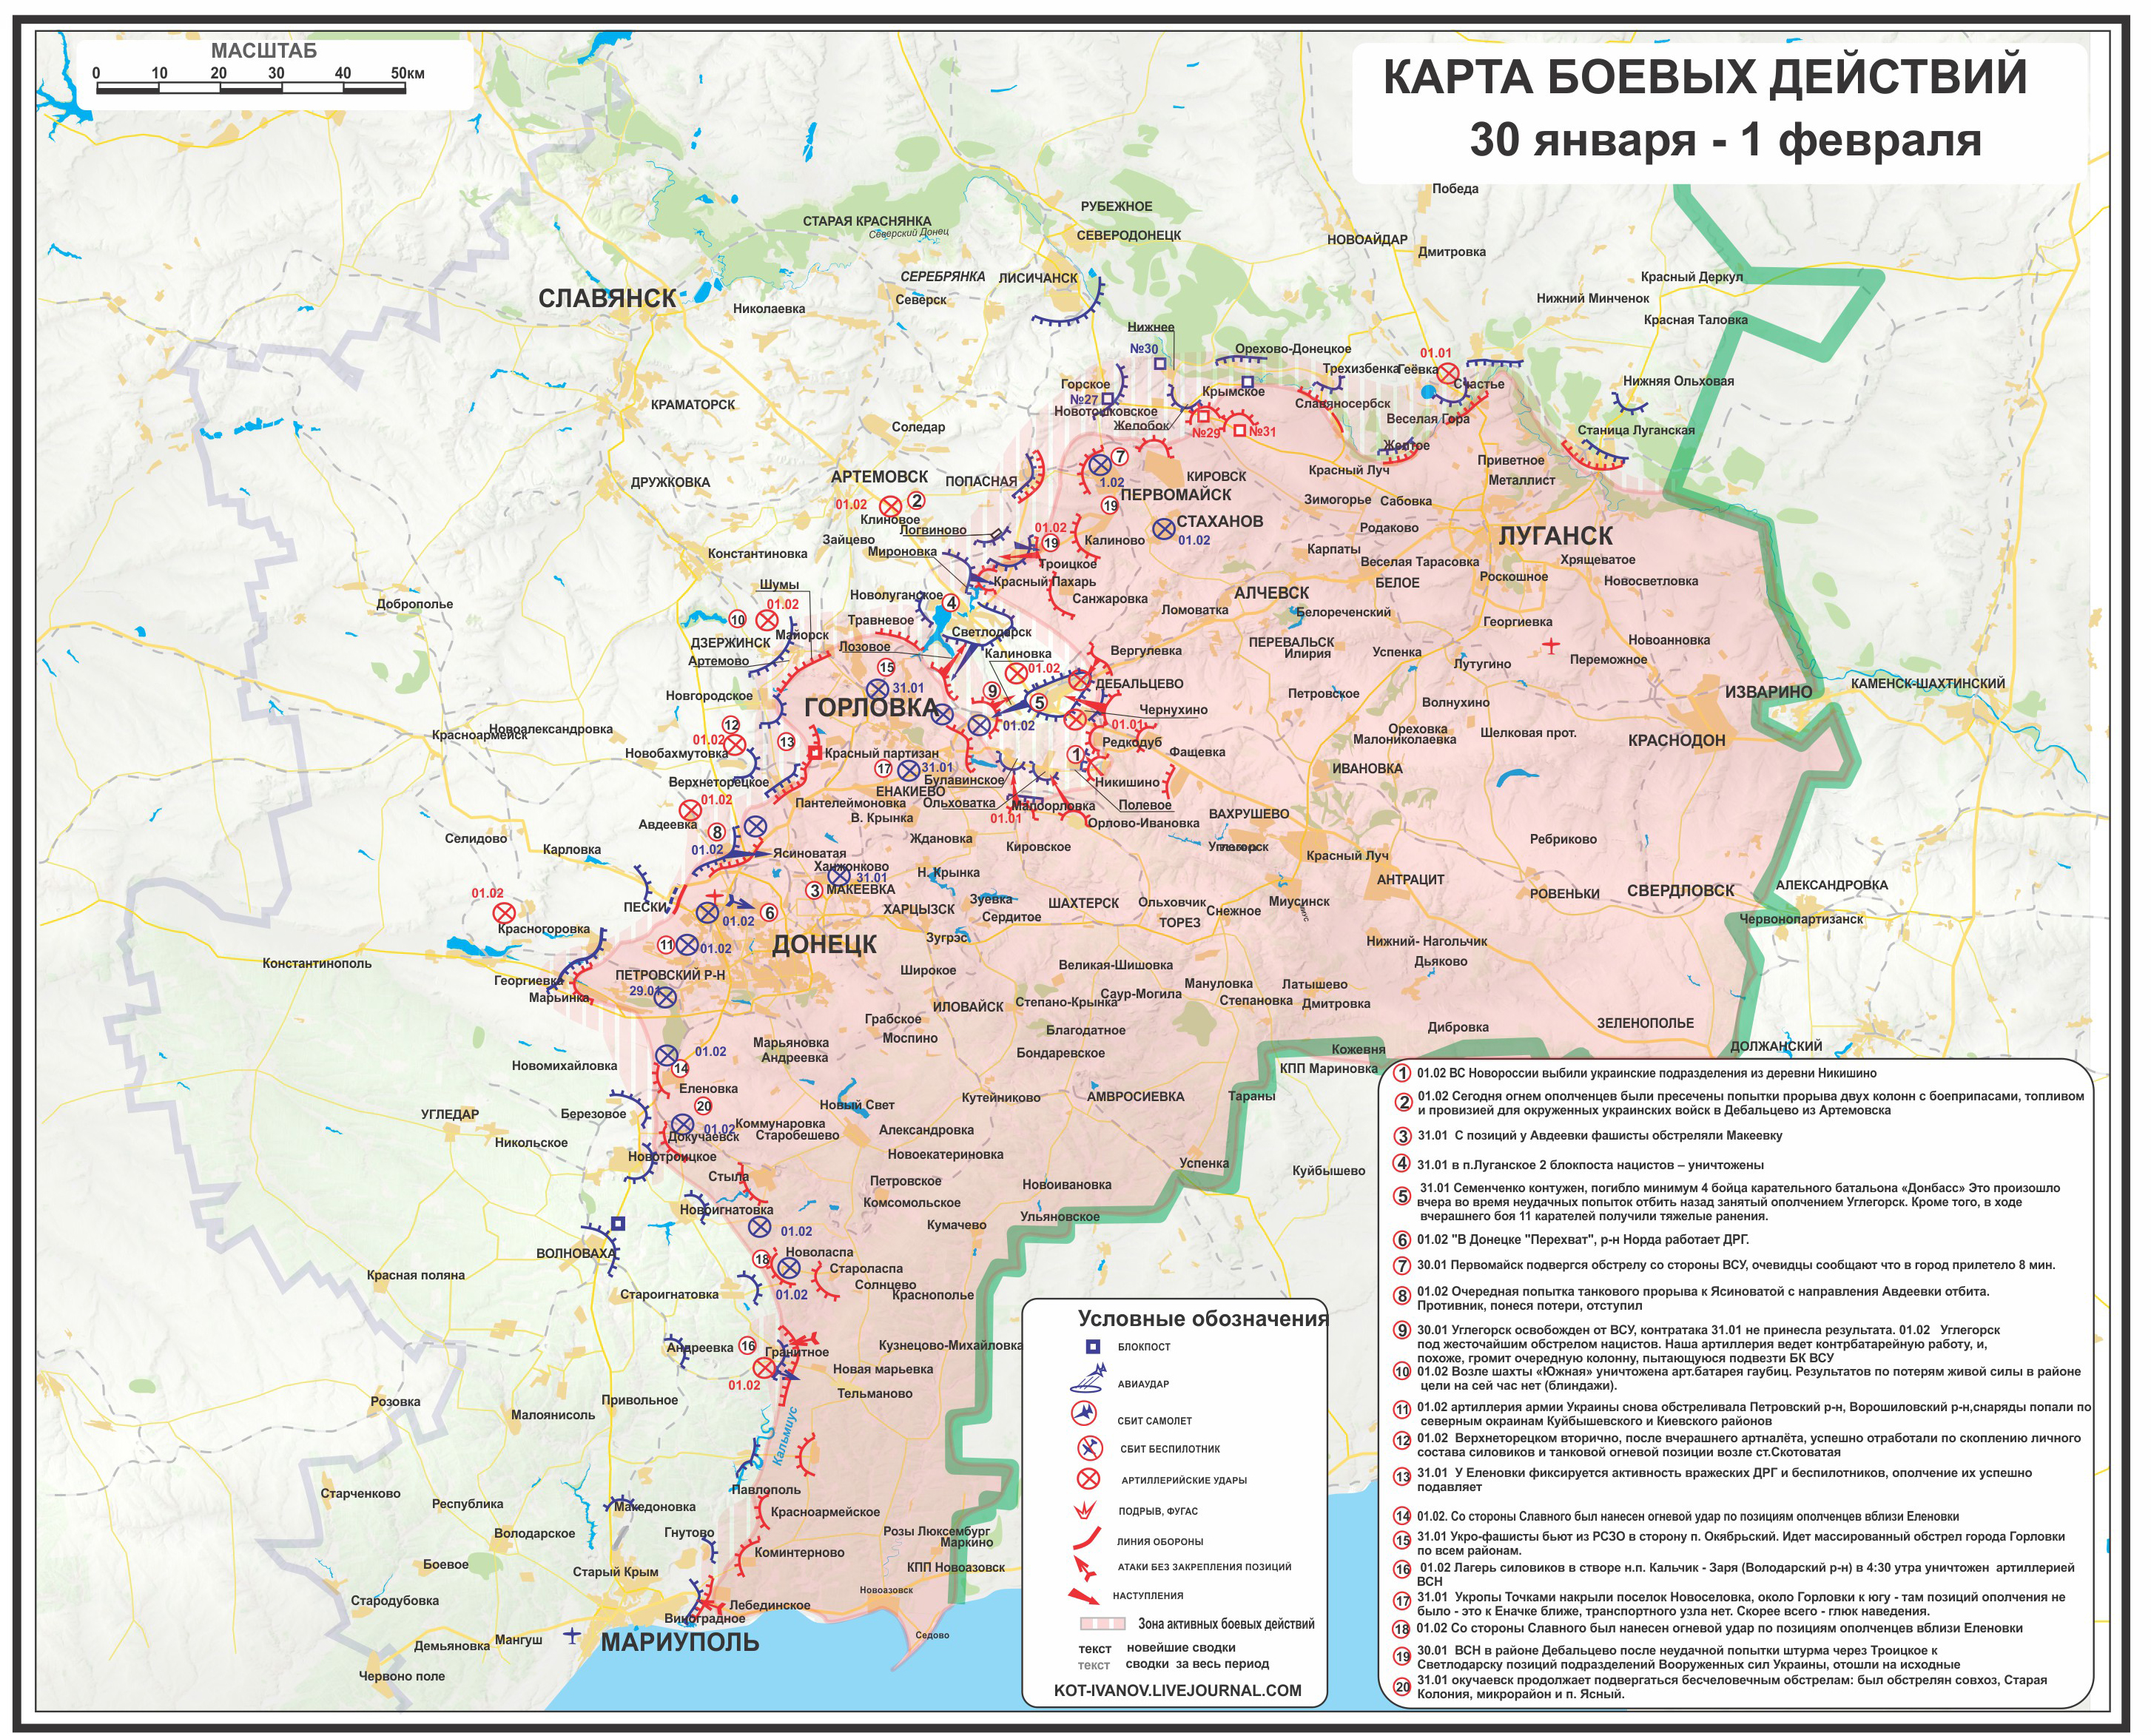 Карта боевых действий в Новороссии за 30 января - 1 февраля (от kot_ivanov)